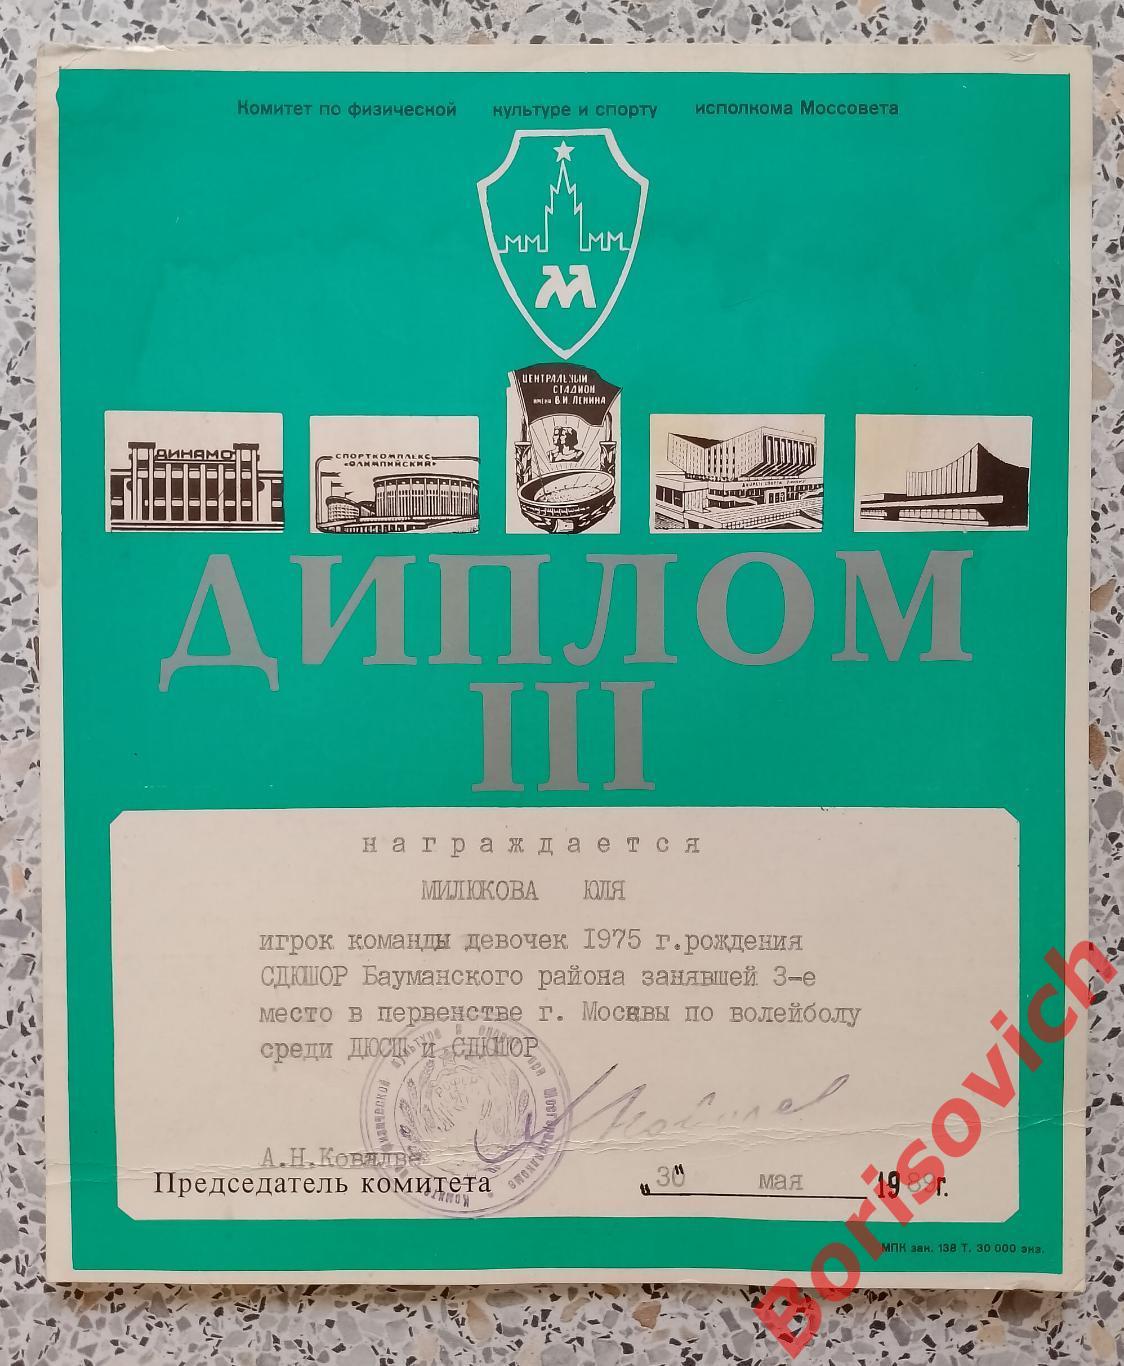 Диплом III место Волейбол Первенство Москвы СДЮШОР Бауманский район 1989